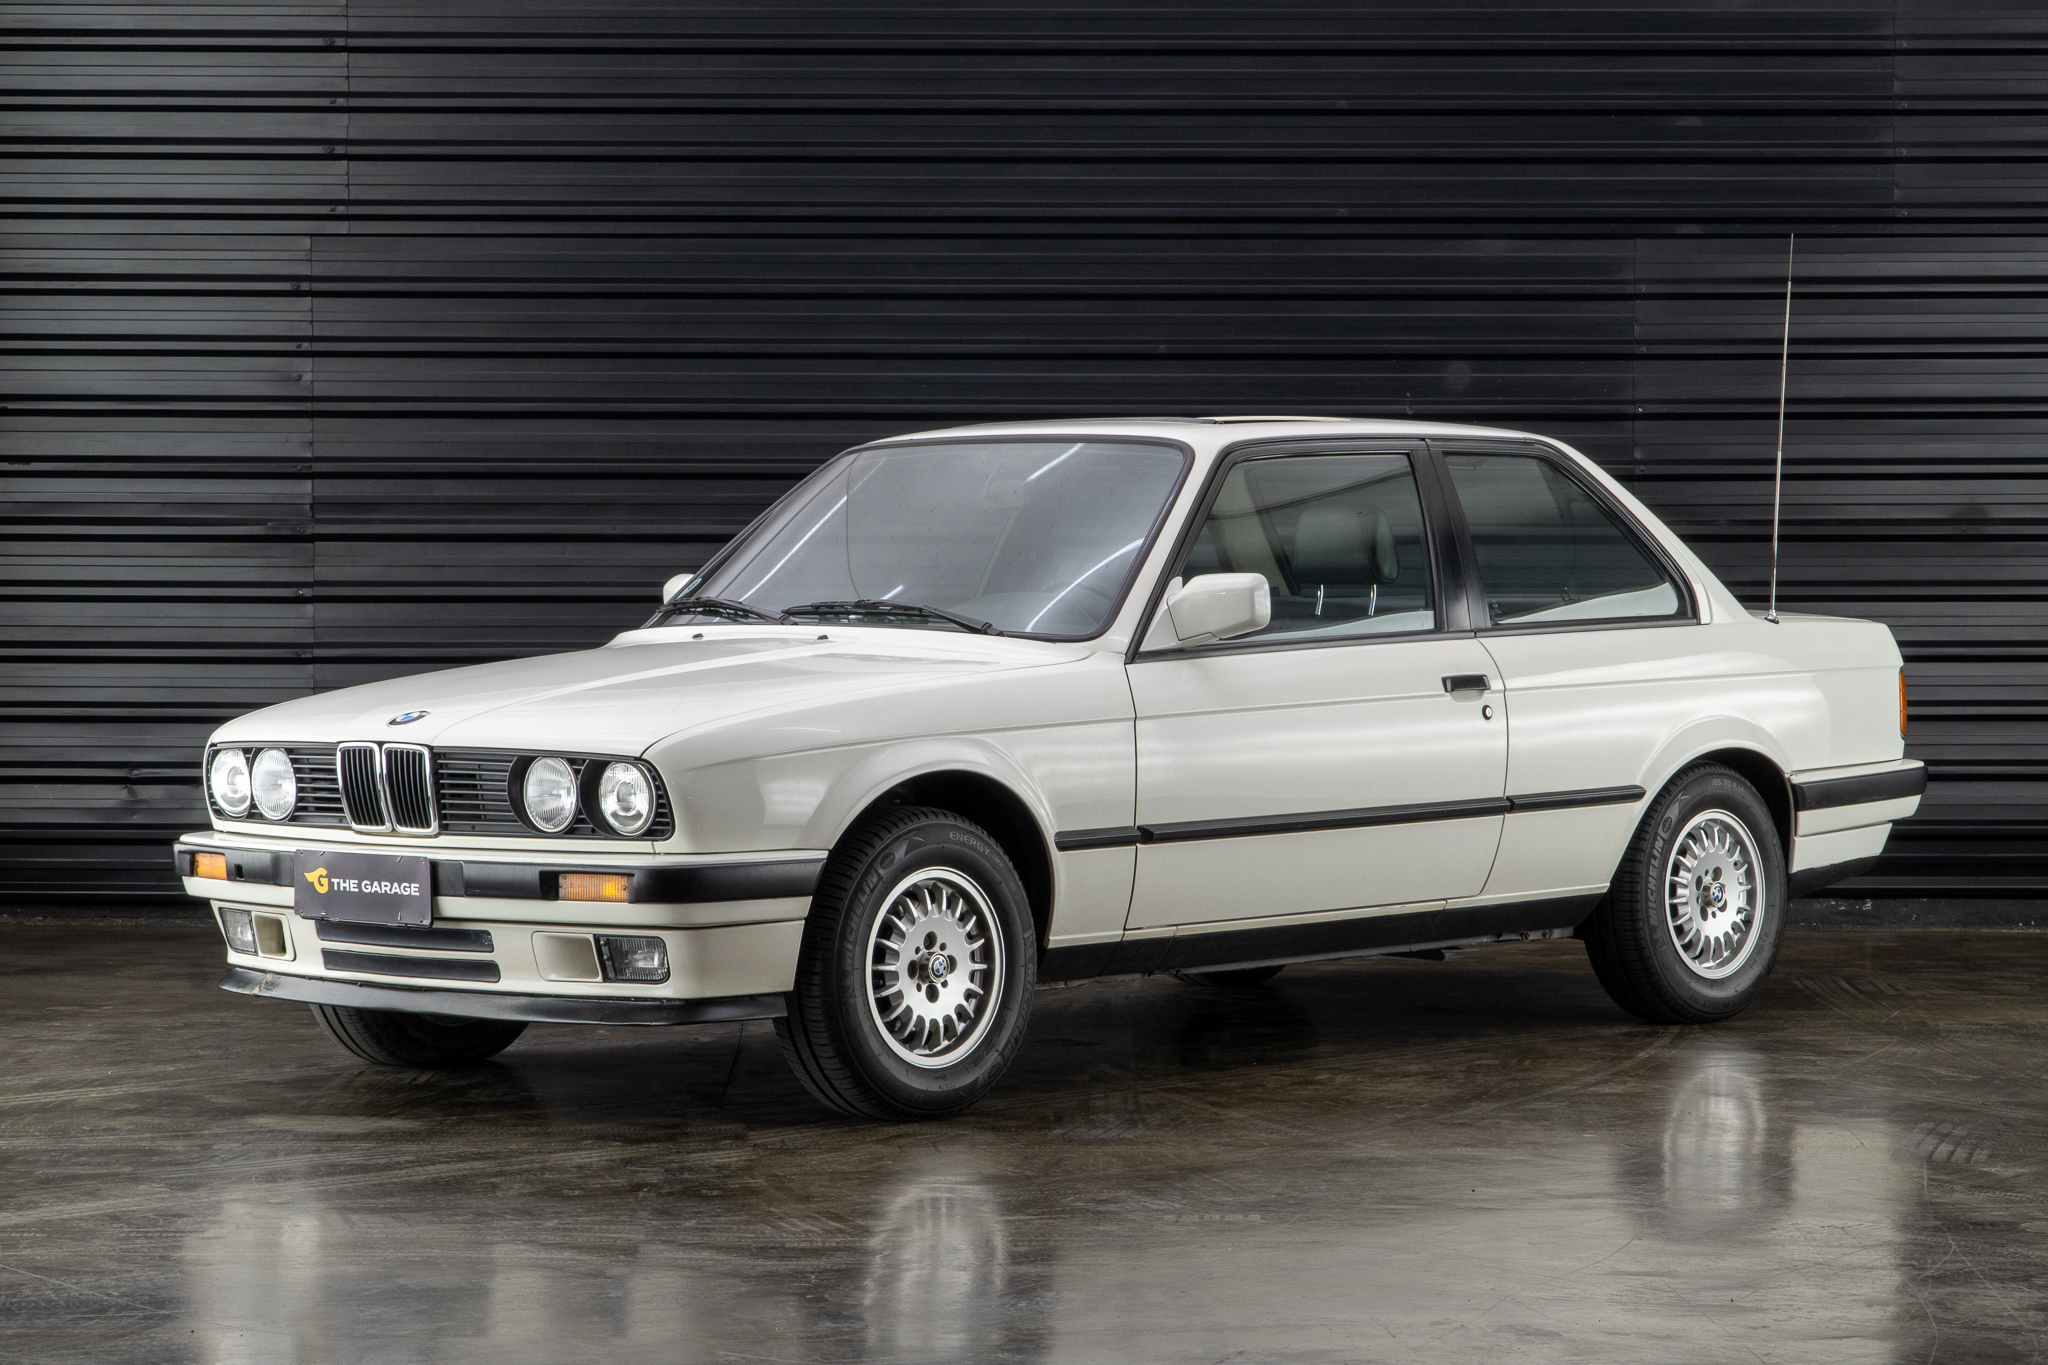 1987 BMW 316i a venda the garage